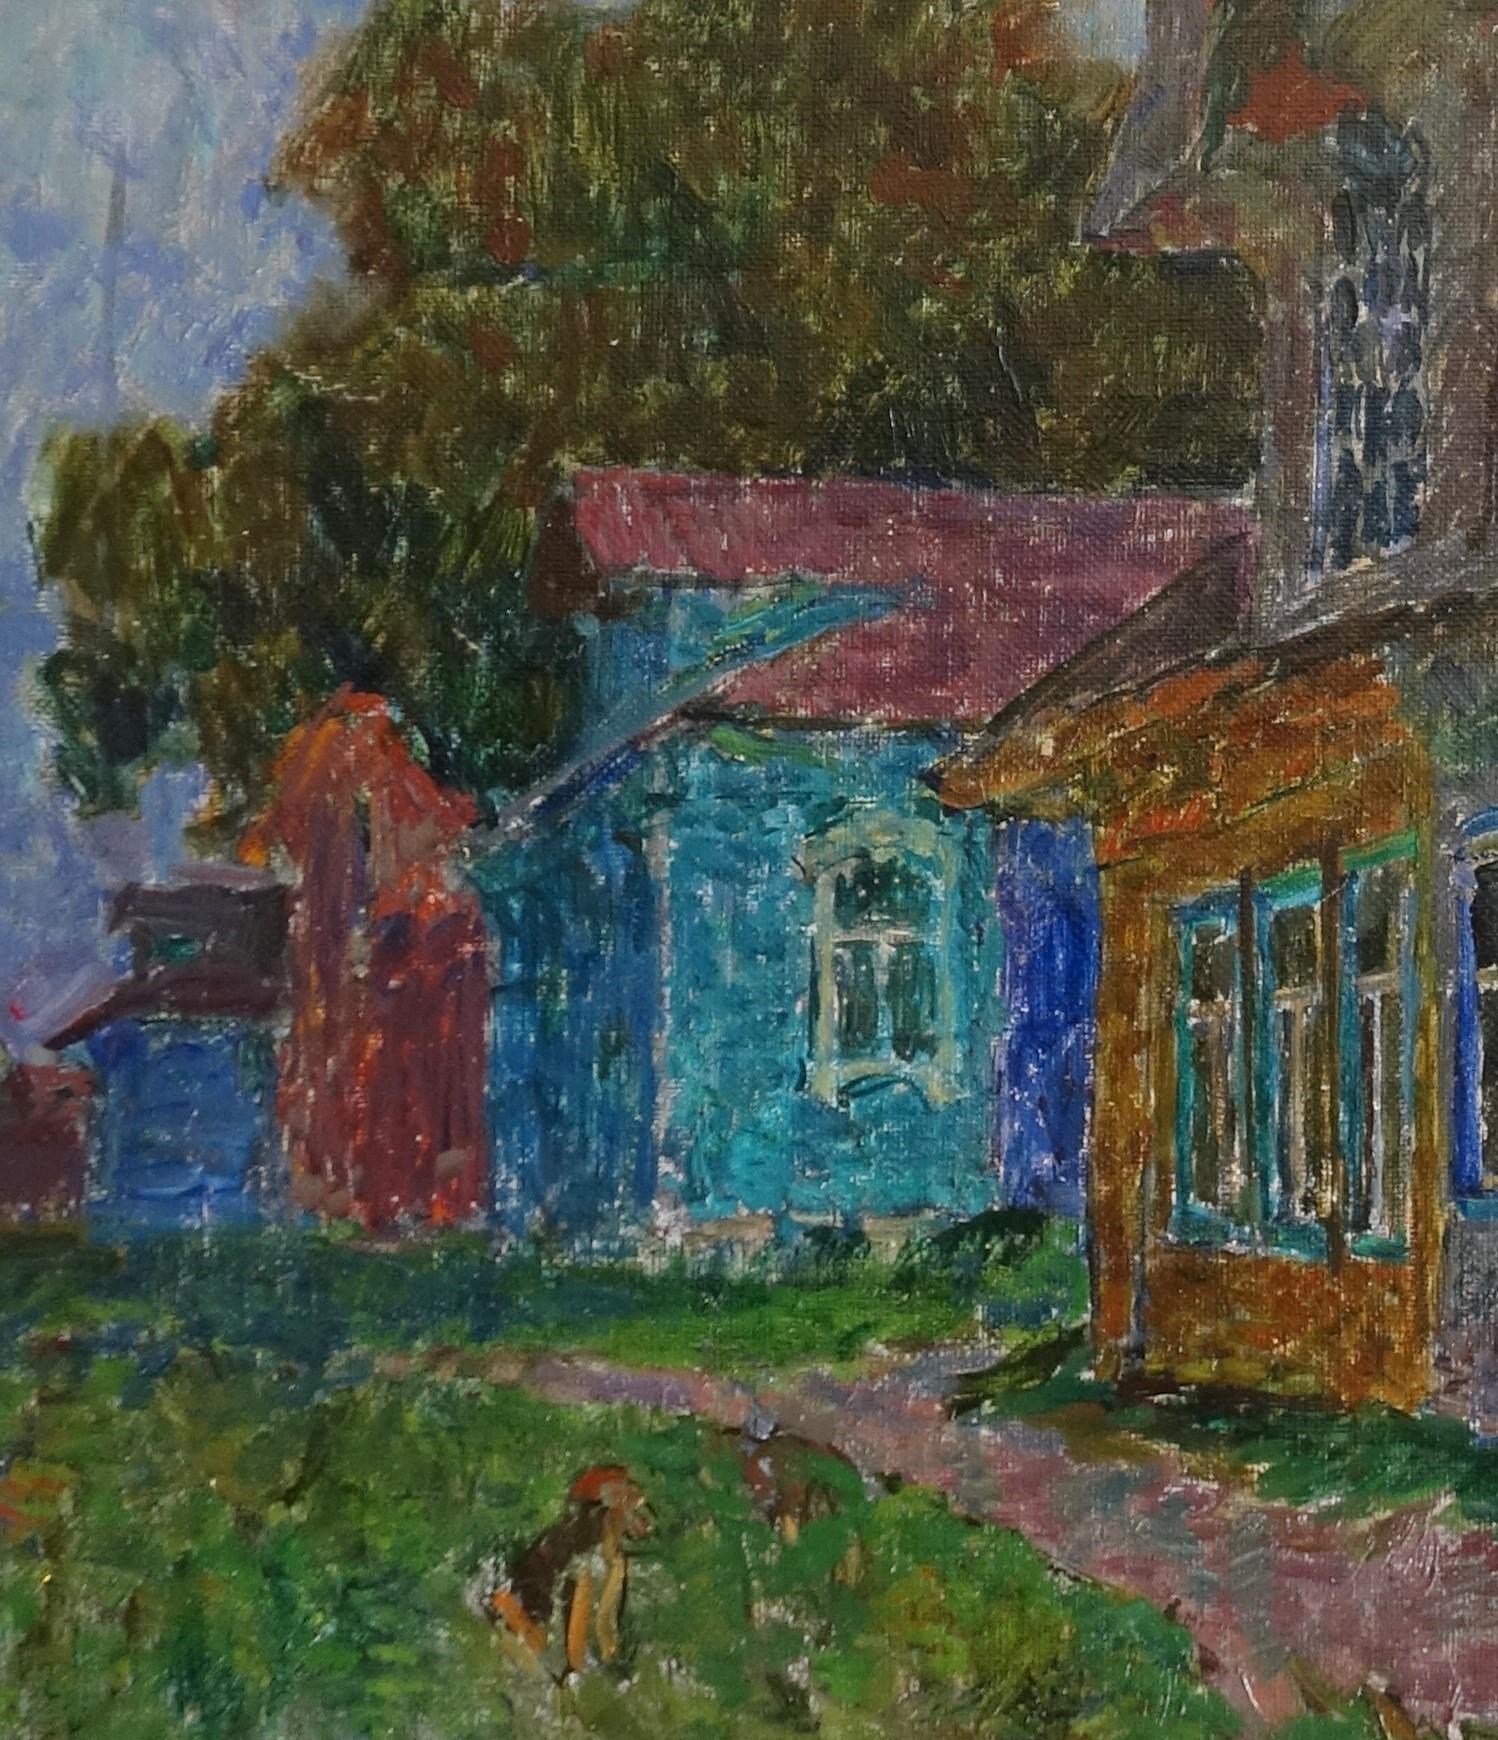   Crépuscule,  peinture à l'huile sur toile, cm. 80 x 60 1985 - Painting de Vyacheslav Zabelin